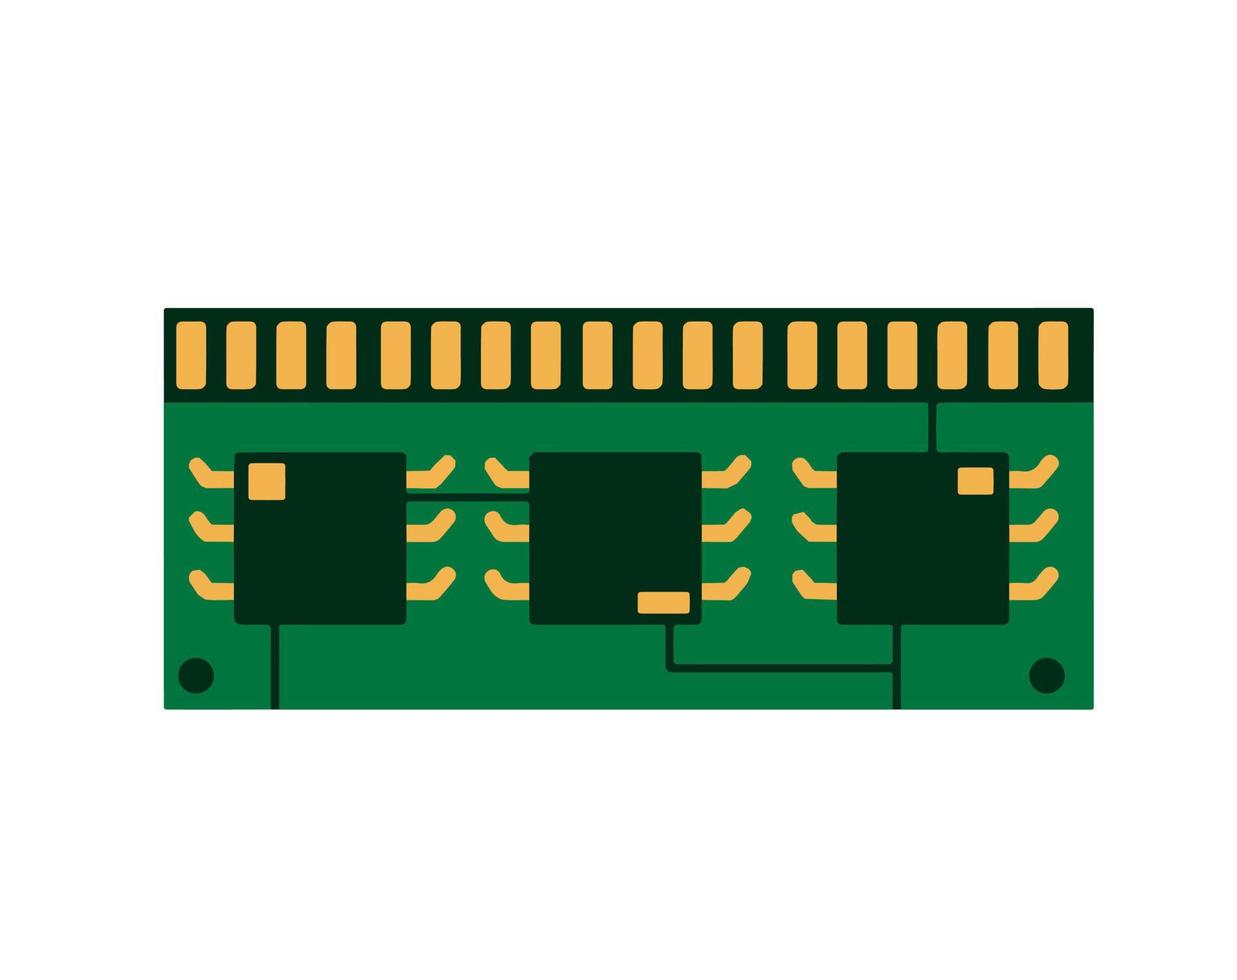 hardware de chips de computadora. microchip verde. icono de microprocesador y microcircuito. tecnología moderna. ilustración plana vector